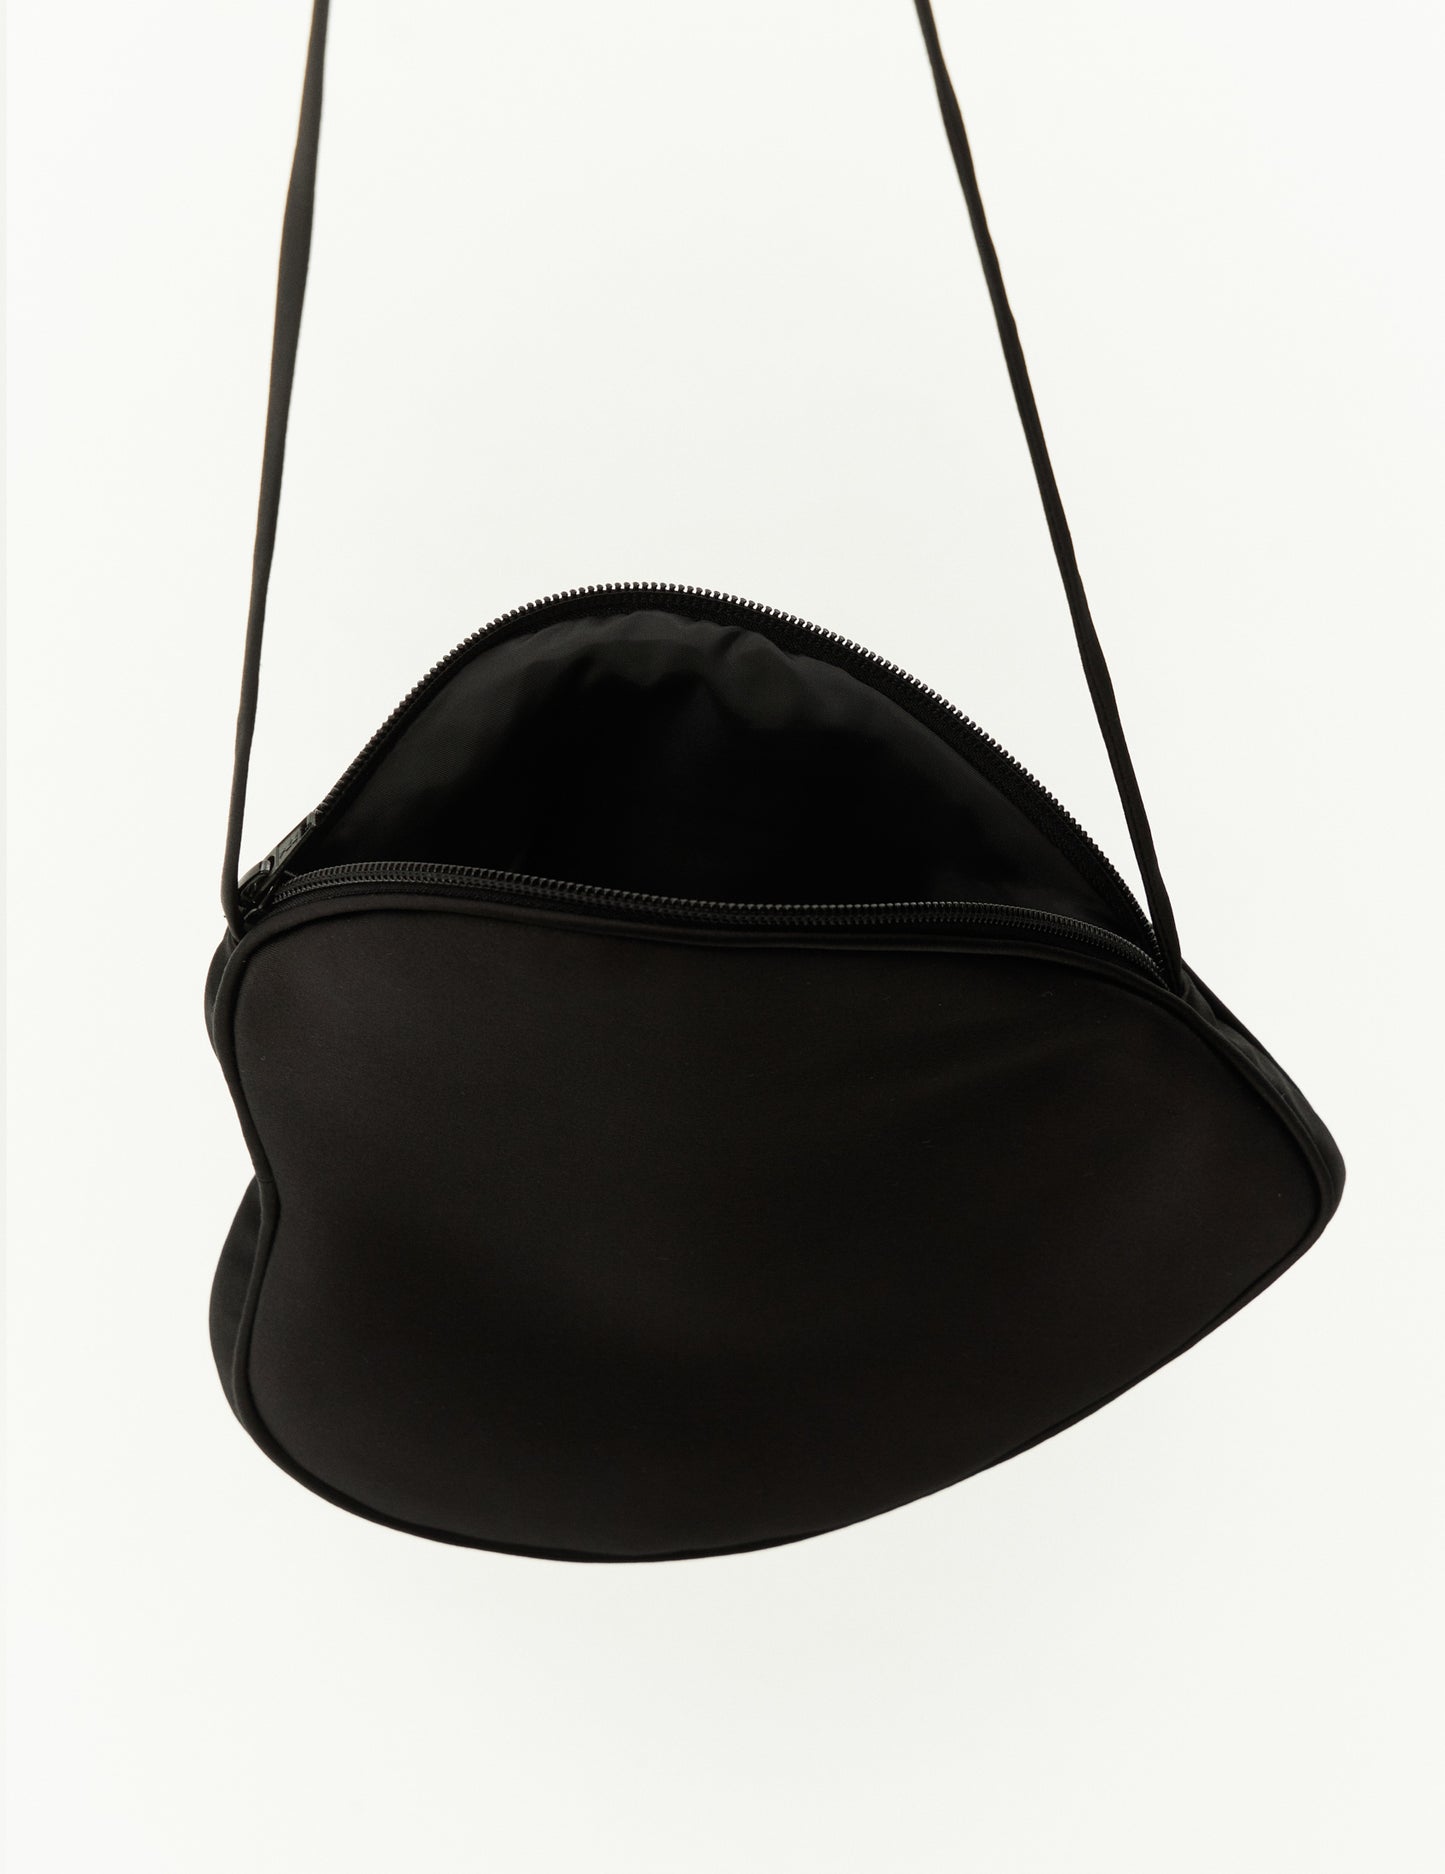 Чорна сумка у формі серця. Атласна міні сумка у чорному і білому кольорі. Бренд форма онлайн